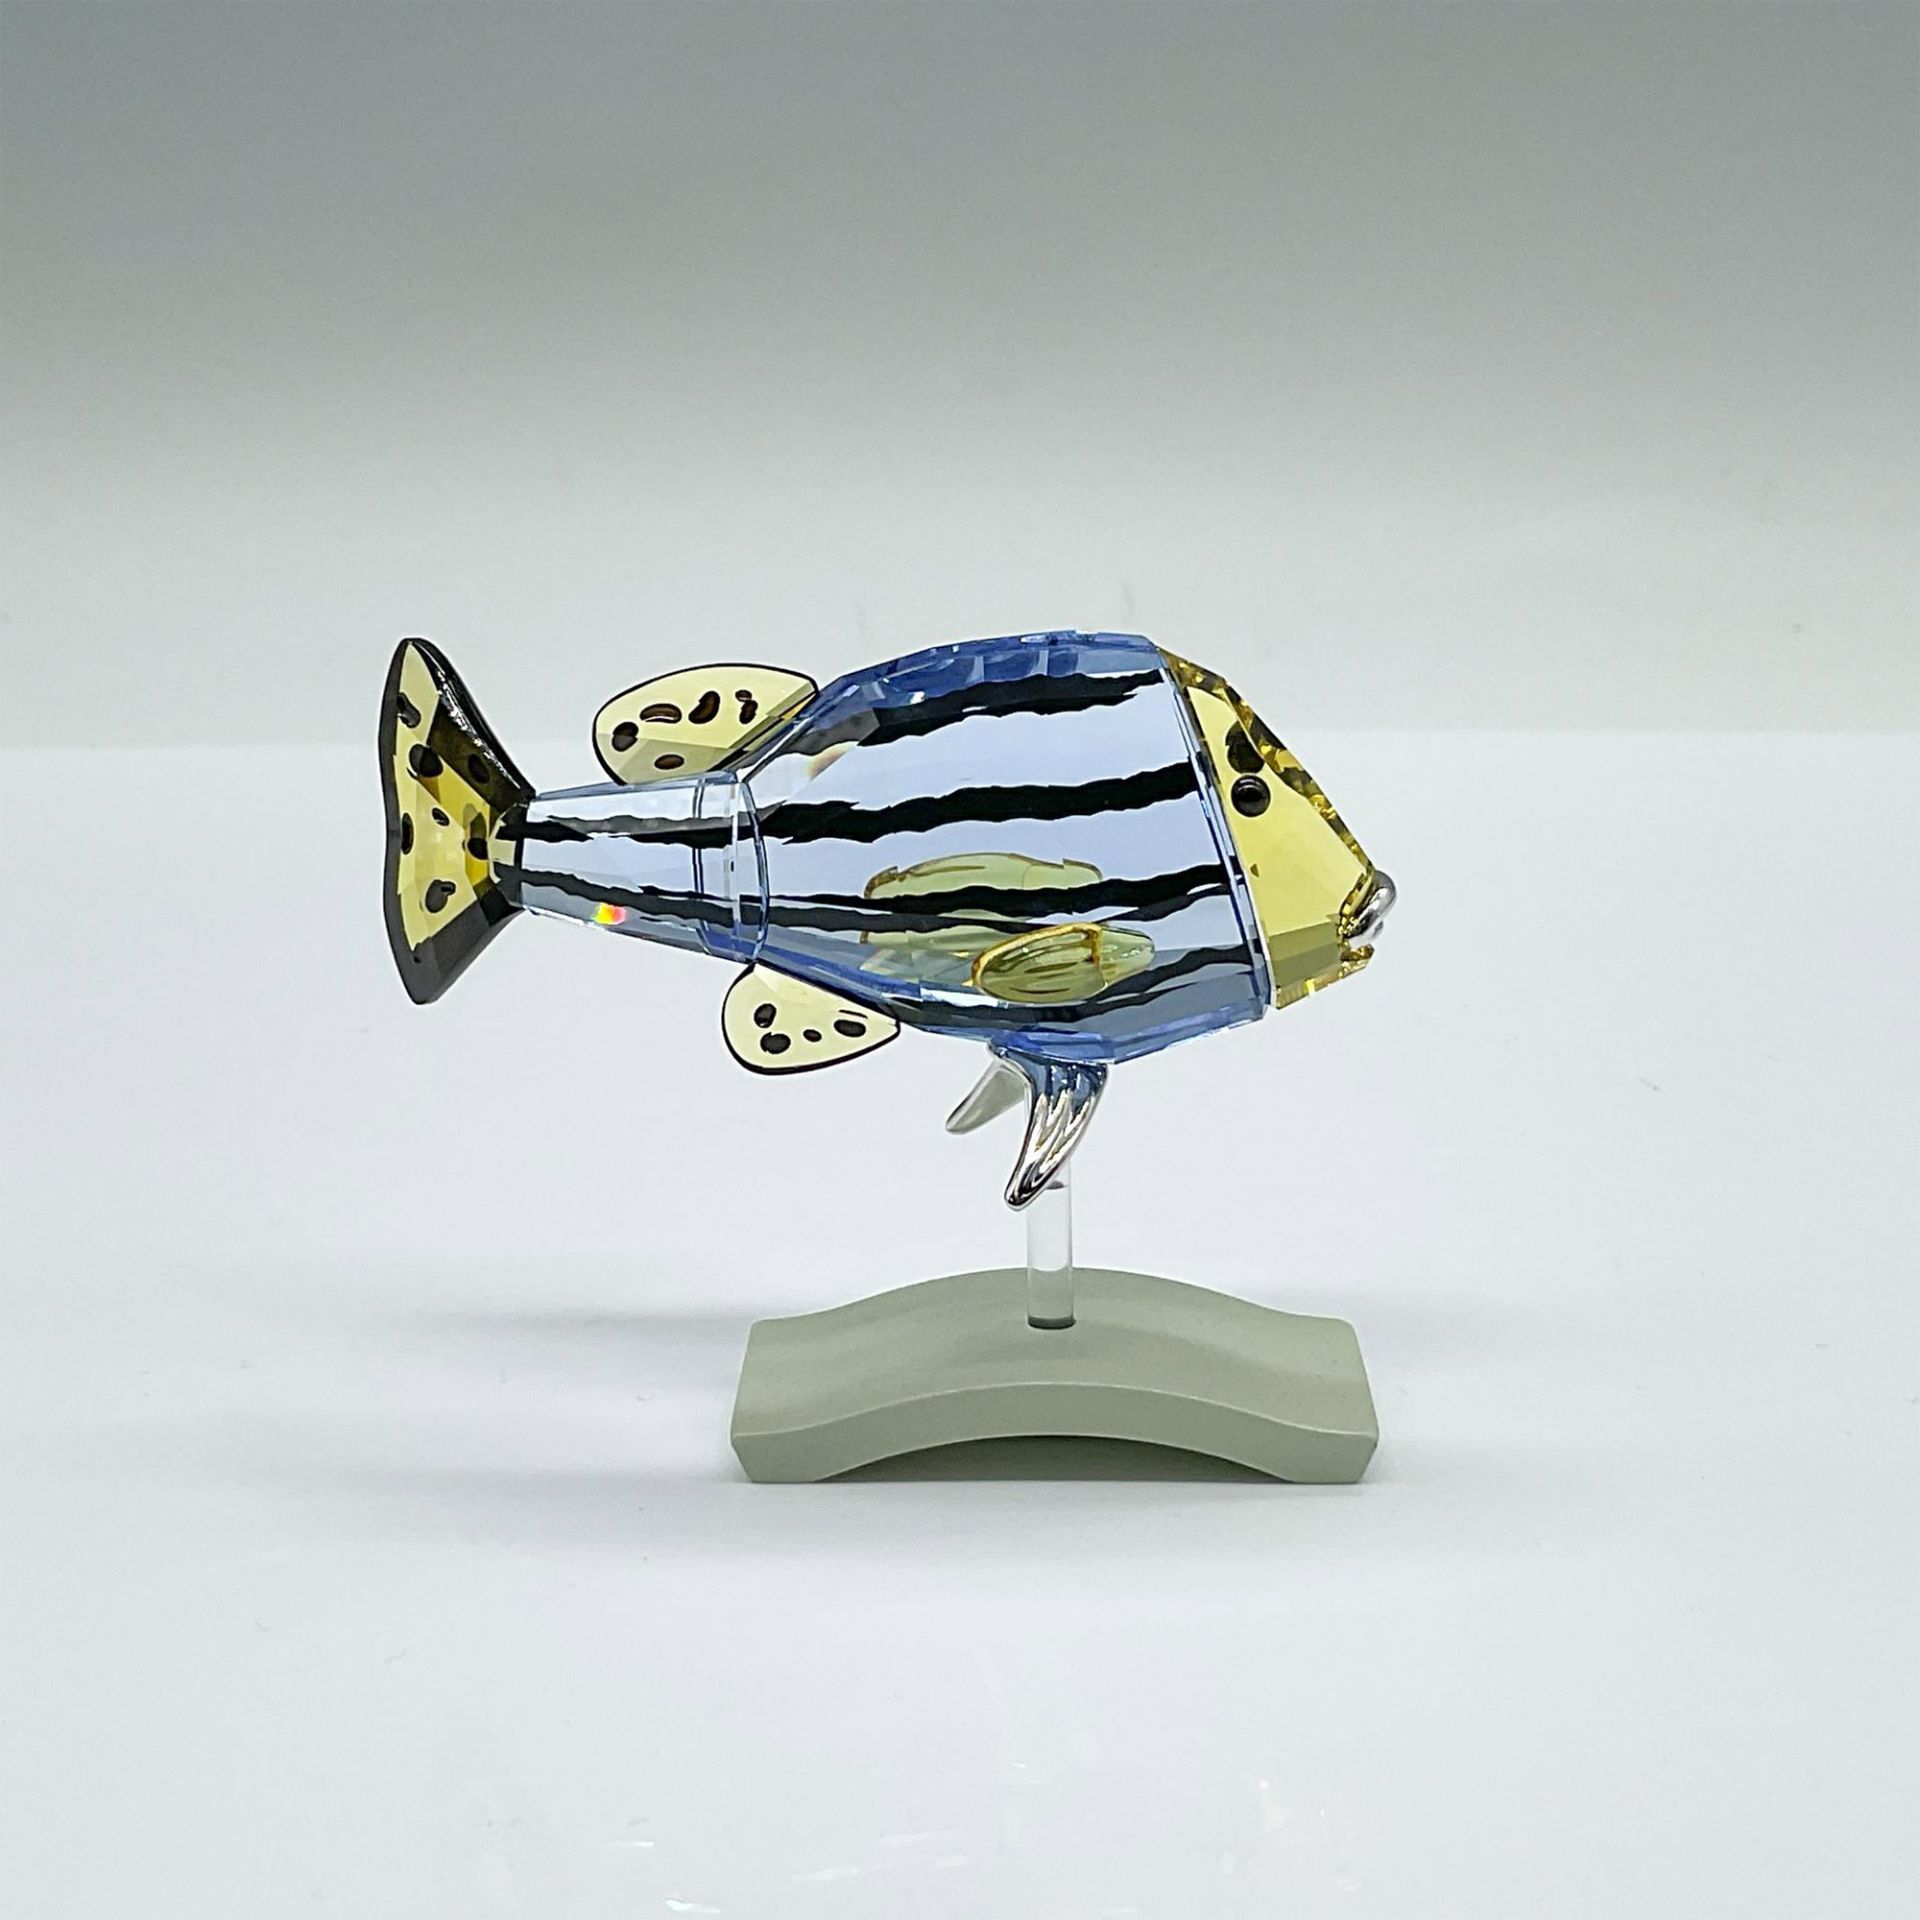 Swarovski Crystal Figurine, Paradise Fish - Catumbela - Image 2 of 3